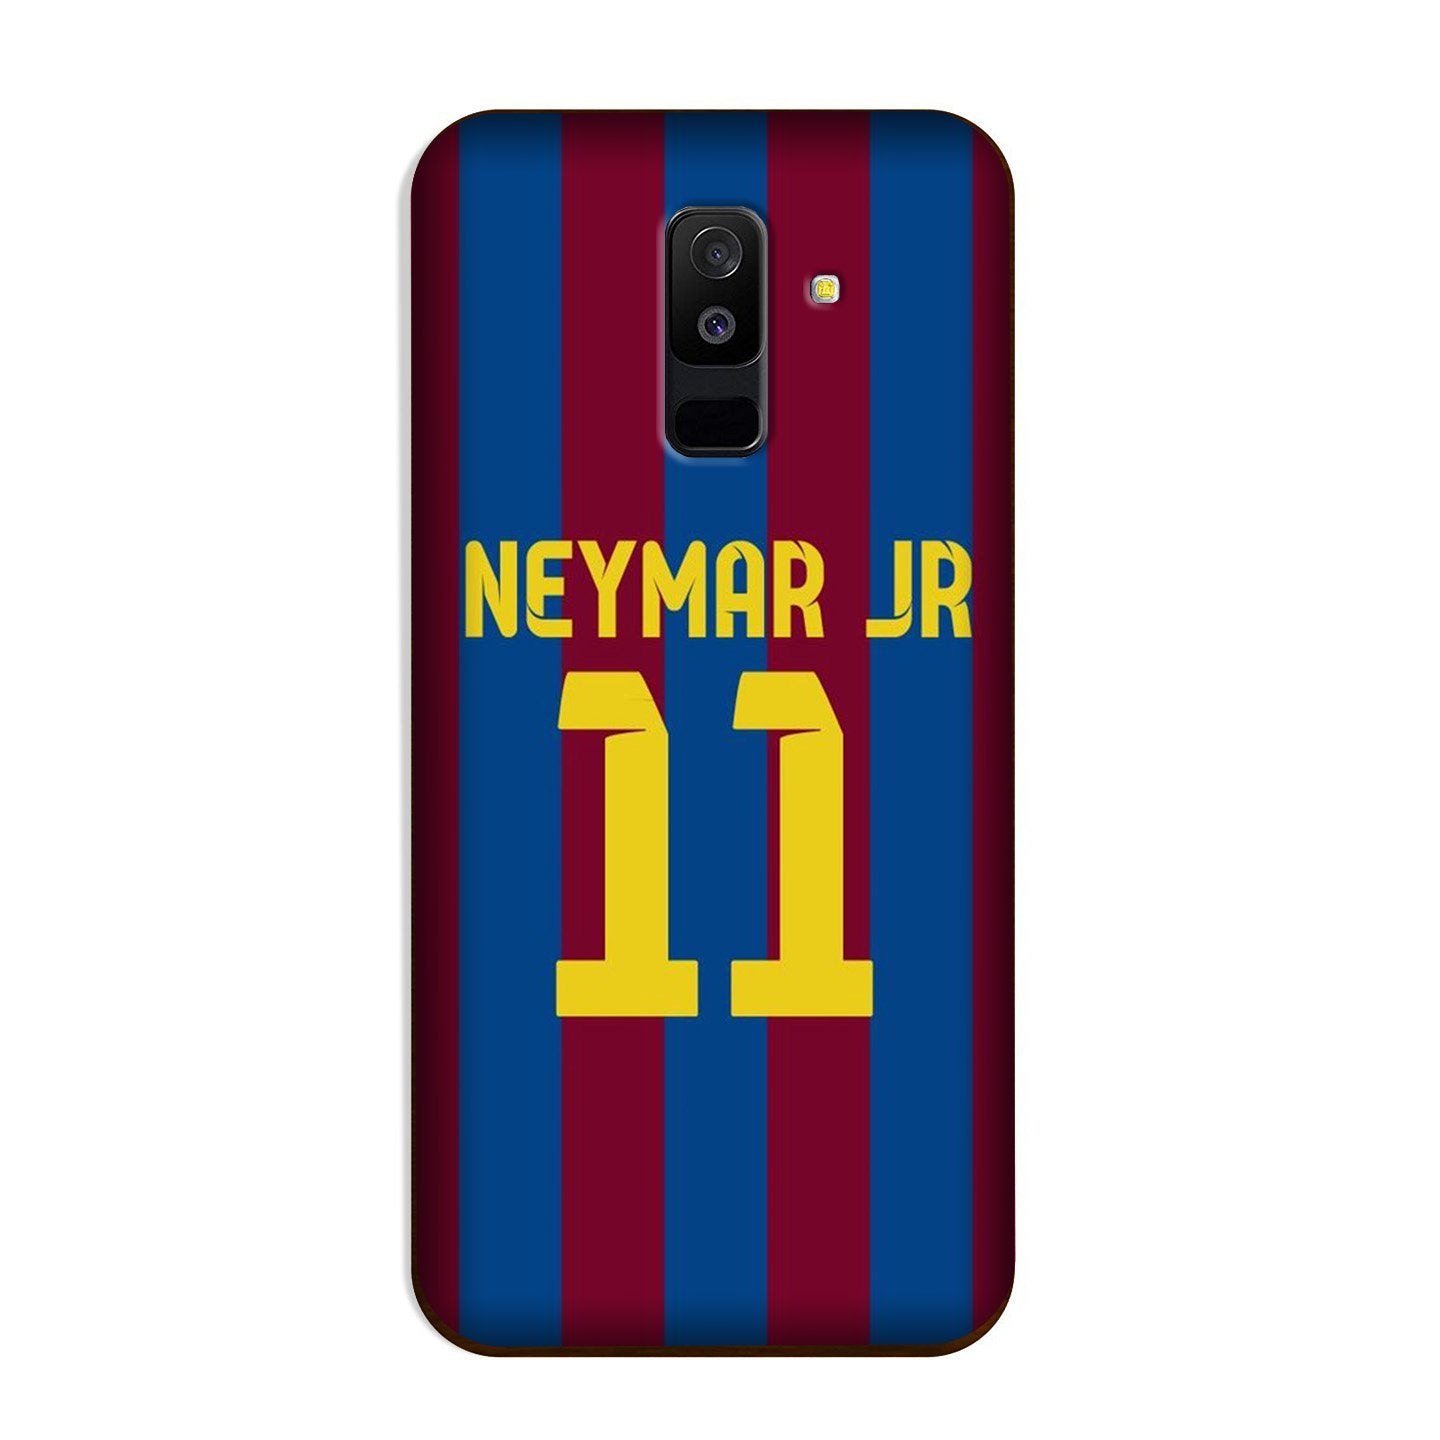 Neymar Jr Case for Galaxy J8(Design - 162)